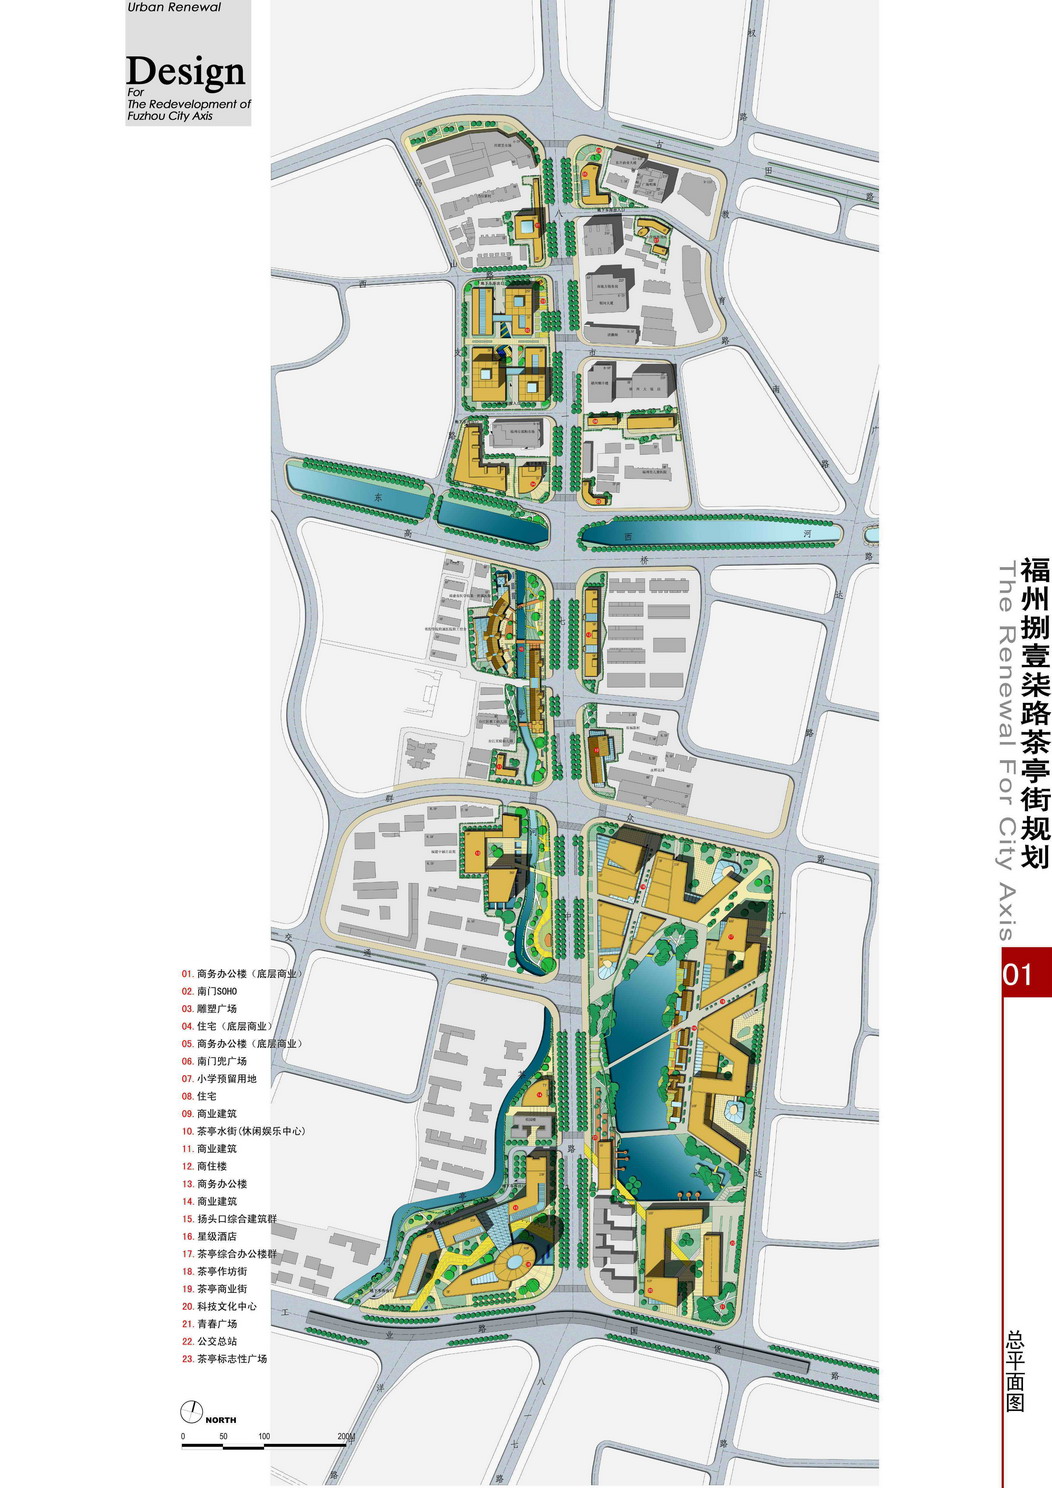 【福州】茶亭街改造景观概念方案设计